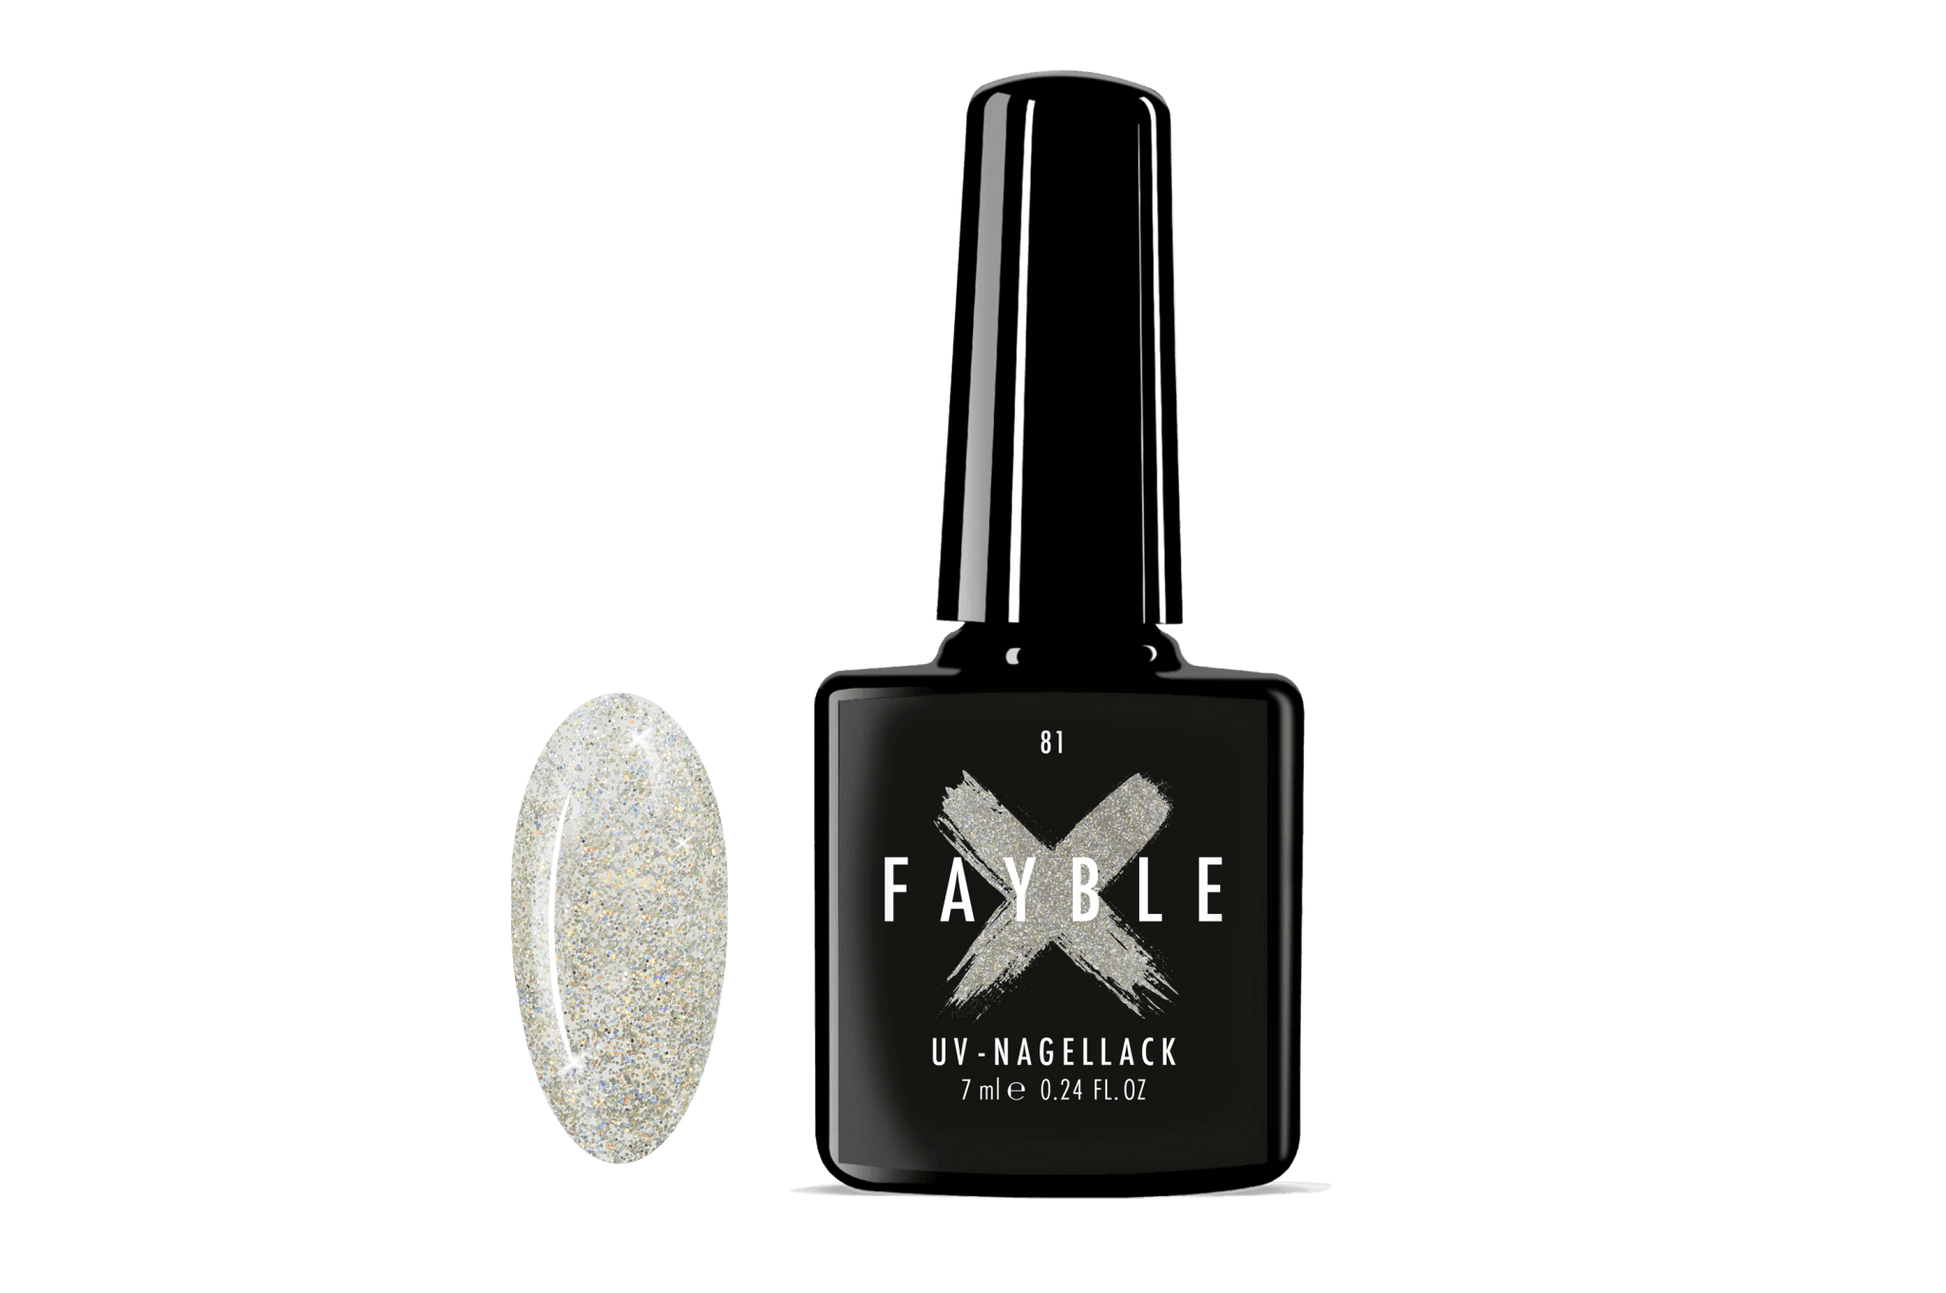 FAYBLE | UV-Nagellack Nr. 81 - FAYBLE